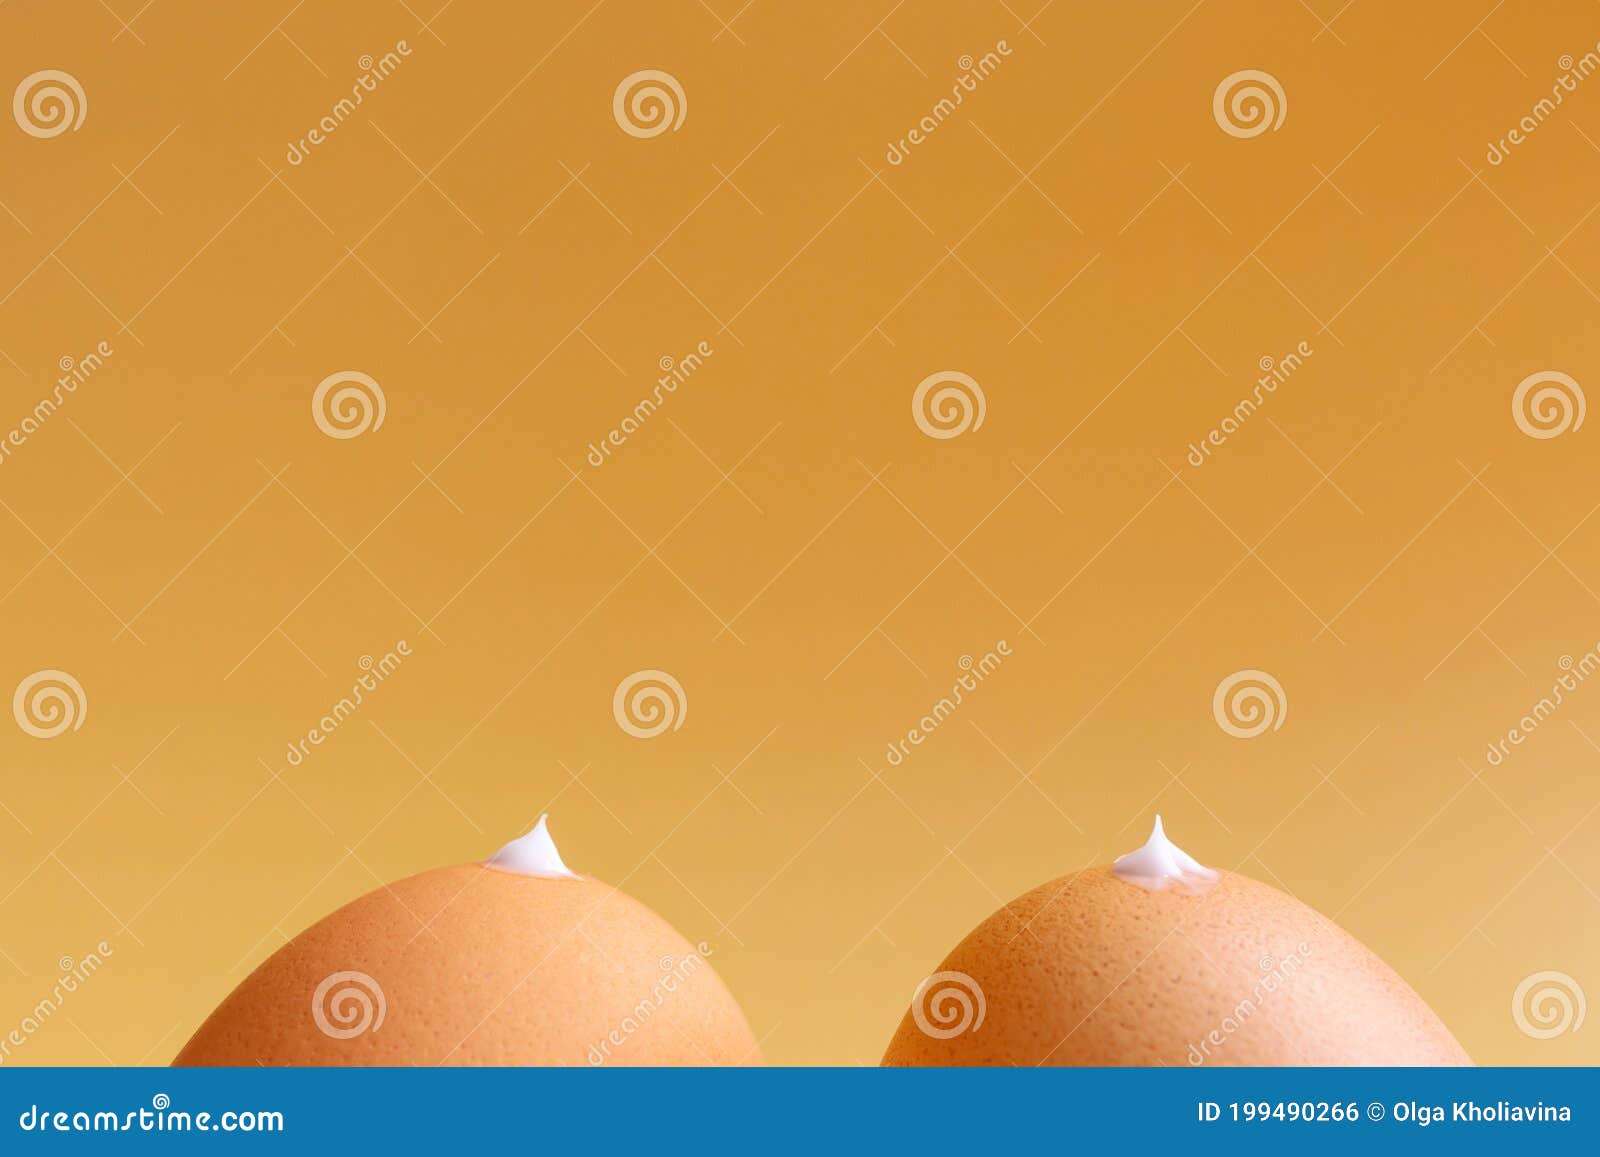 洋葱暗示女人的乳头和x27；的乳房 库存图片. 图片 包括有 腹部, 贪婪, 洋葱, 人员, 赤裸, 乳头 - 163781593